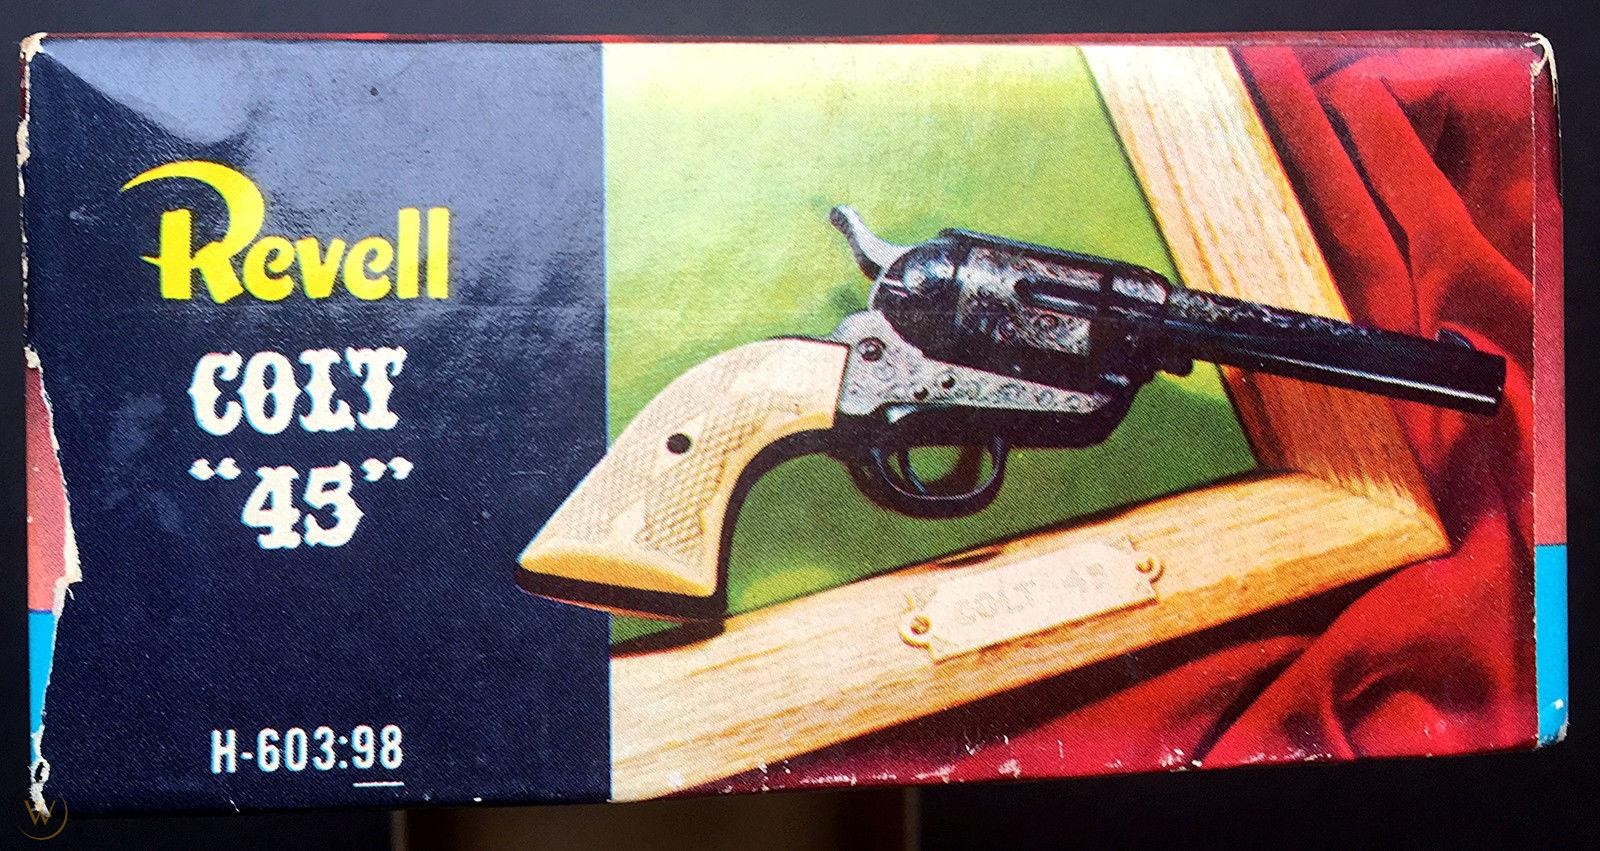 box-revell-pistol-kit-603-98-colt-45_1_57d74cd1d7ff9f1d02a6877b87e00912.jpg